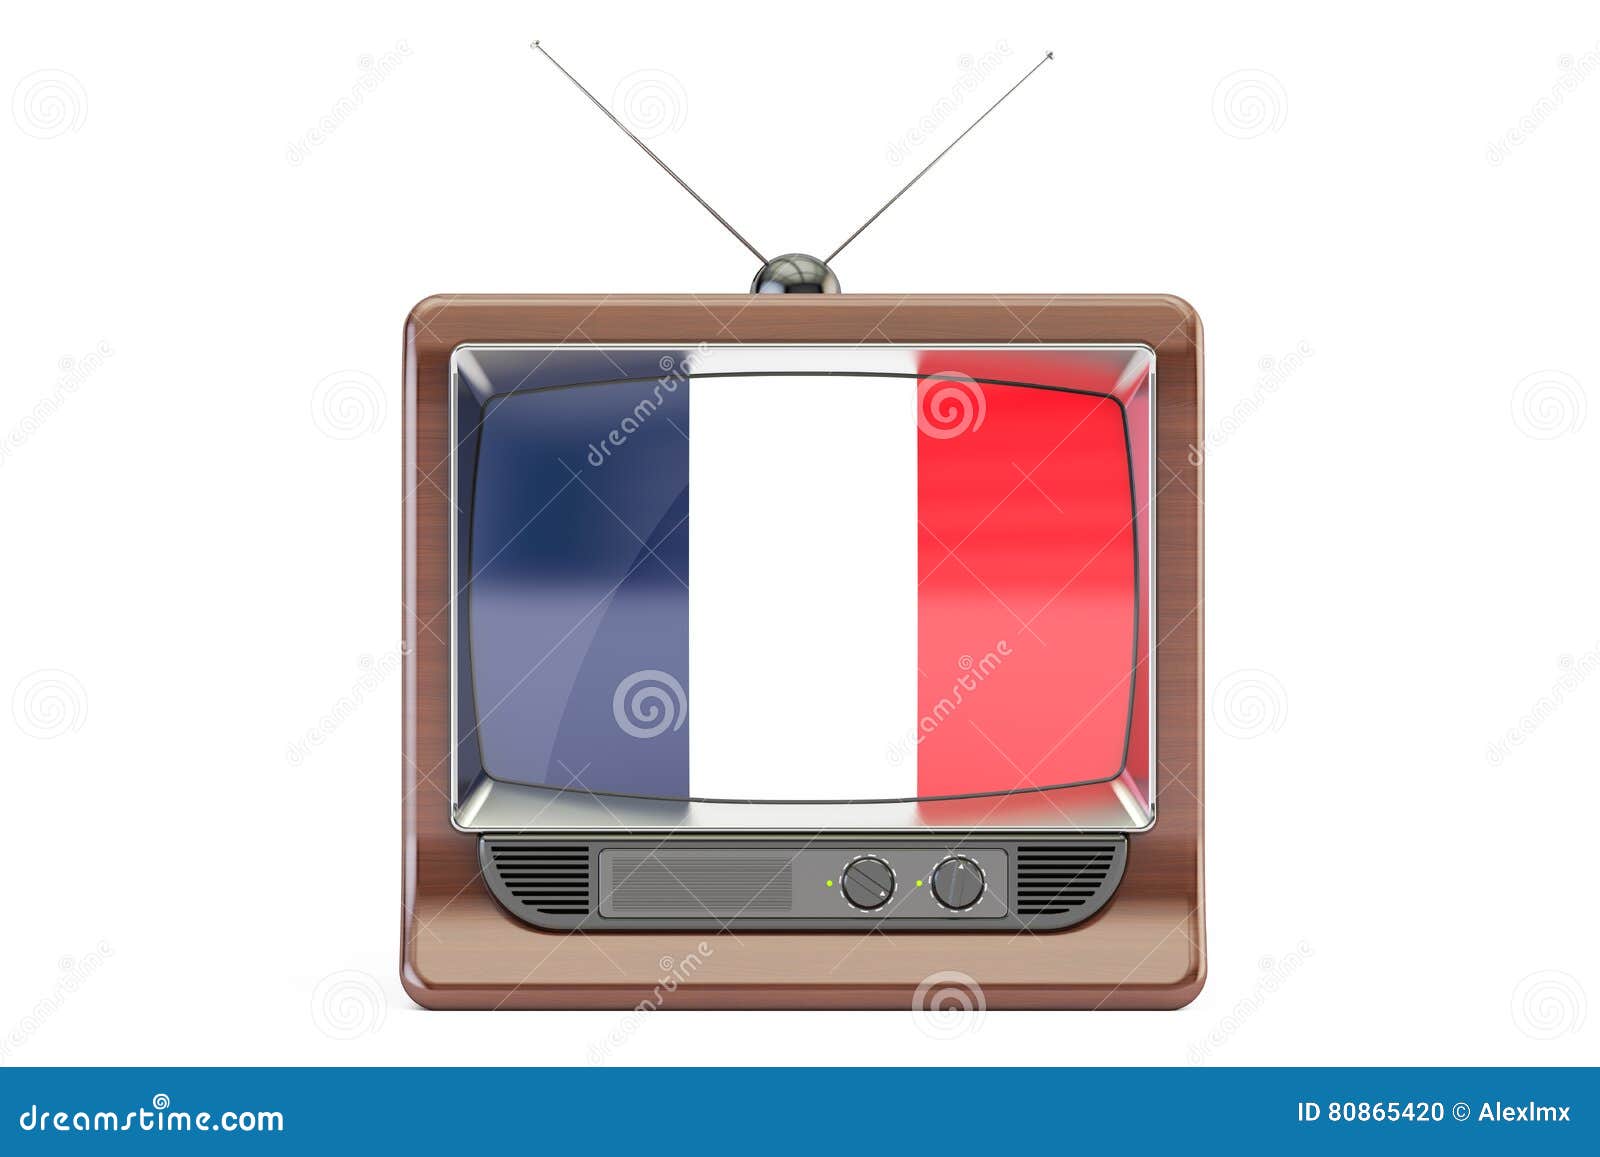 French tv channels. Телевидение Франции. Французские каналы ТВ. Телевизор Франция. Канал французского телевидения.